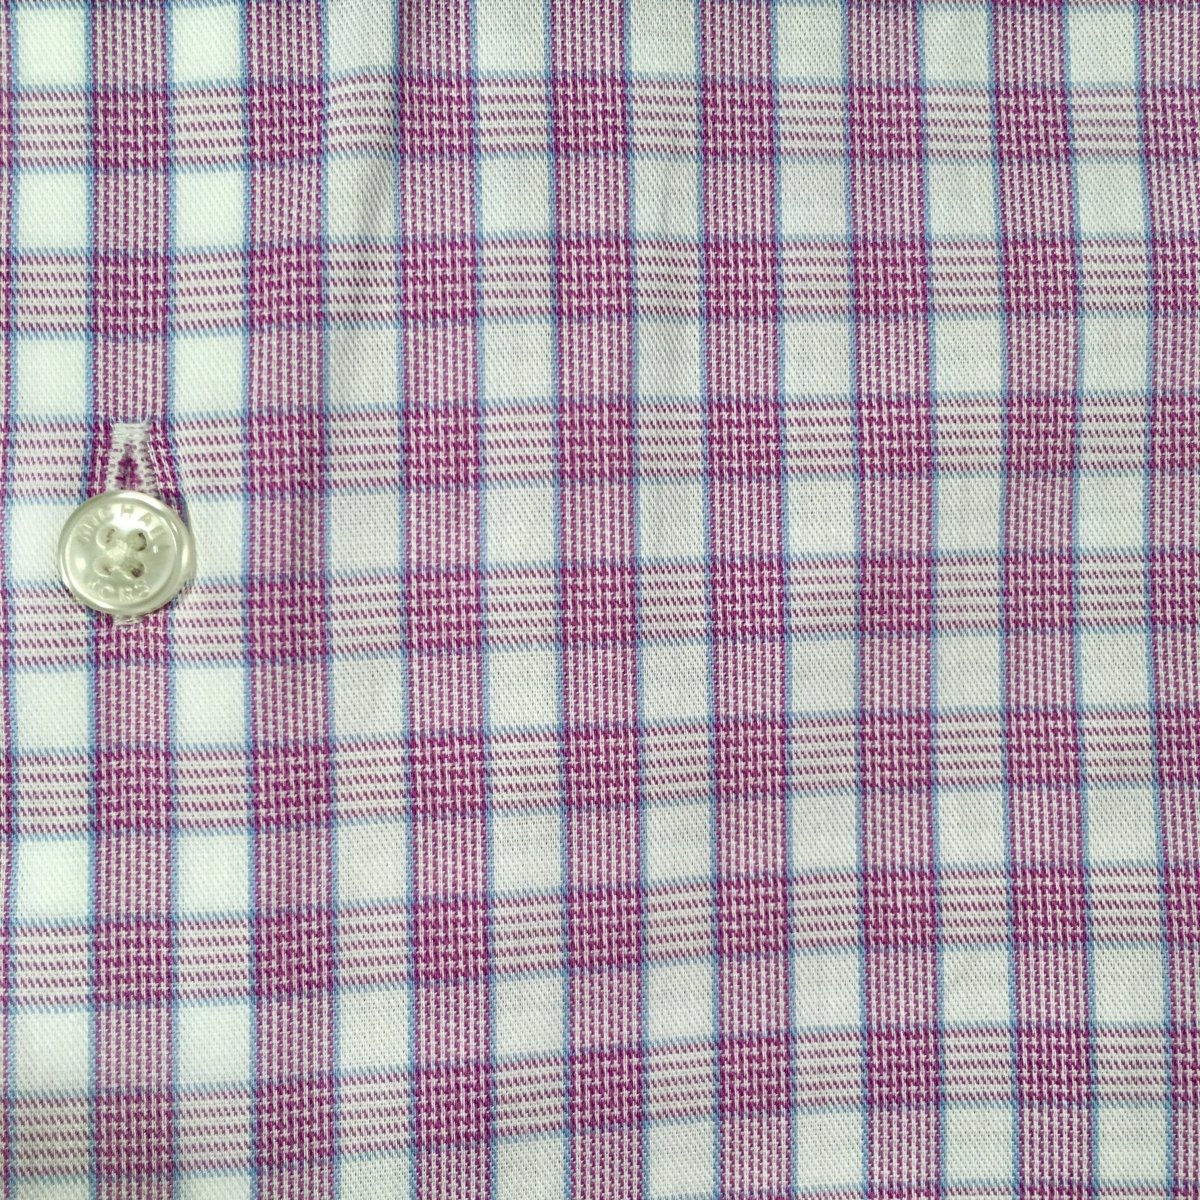 Michael Kors Boys Cotton Pink/White Check Dress Shirt Z0349 Dress Shirts Michael Kors 